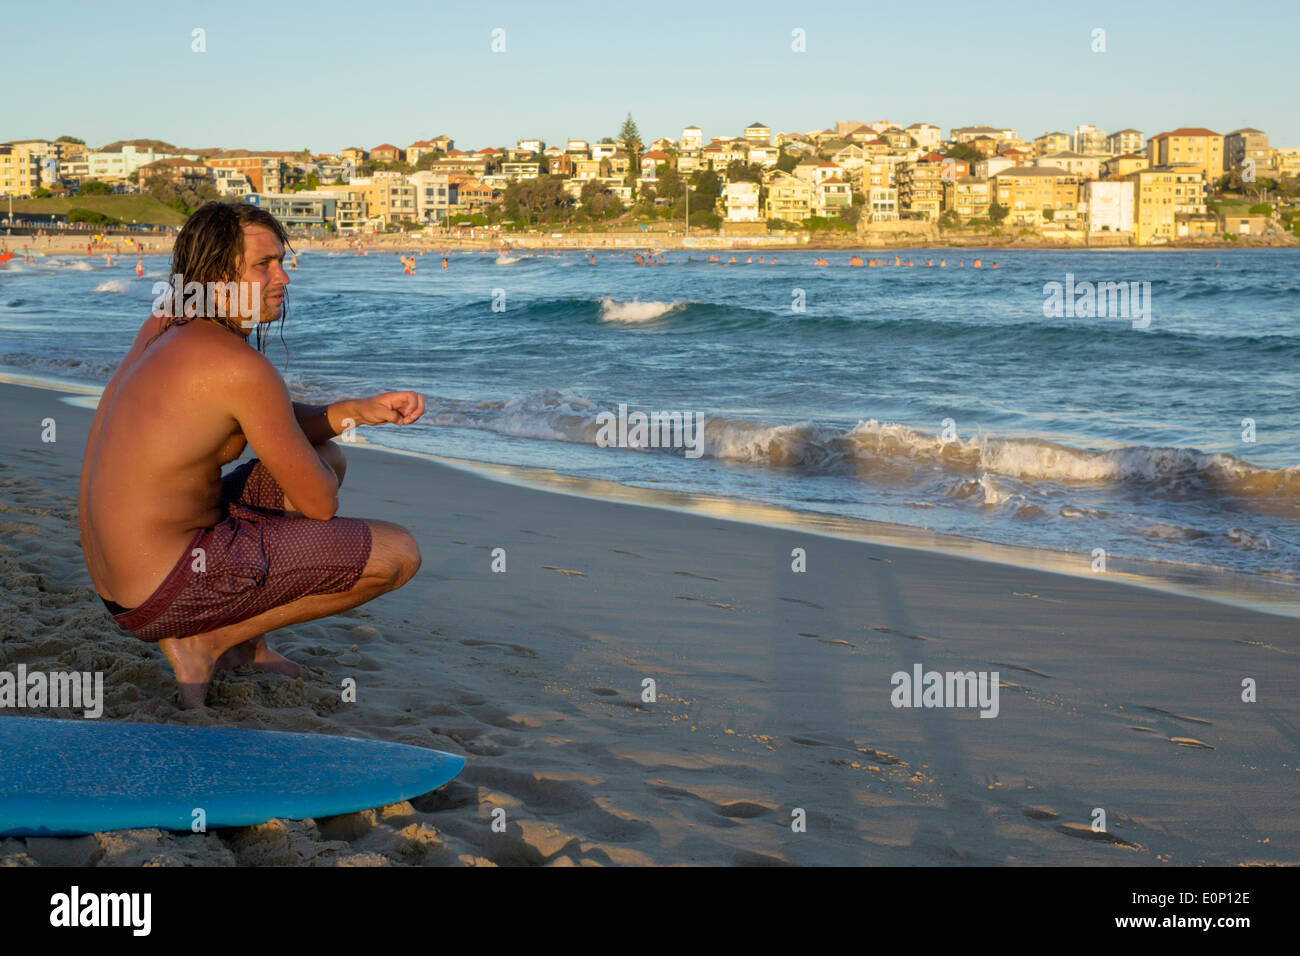 Sydney Australie,Bondi Beach,Océan Pacifique,surf,vagues,sable,public,North Bondi,surfeur,homme hommes,surf,AU140310234 Banque D'Images